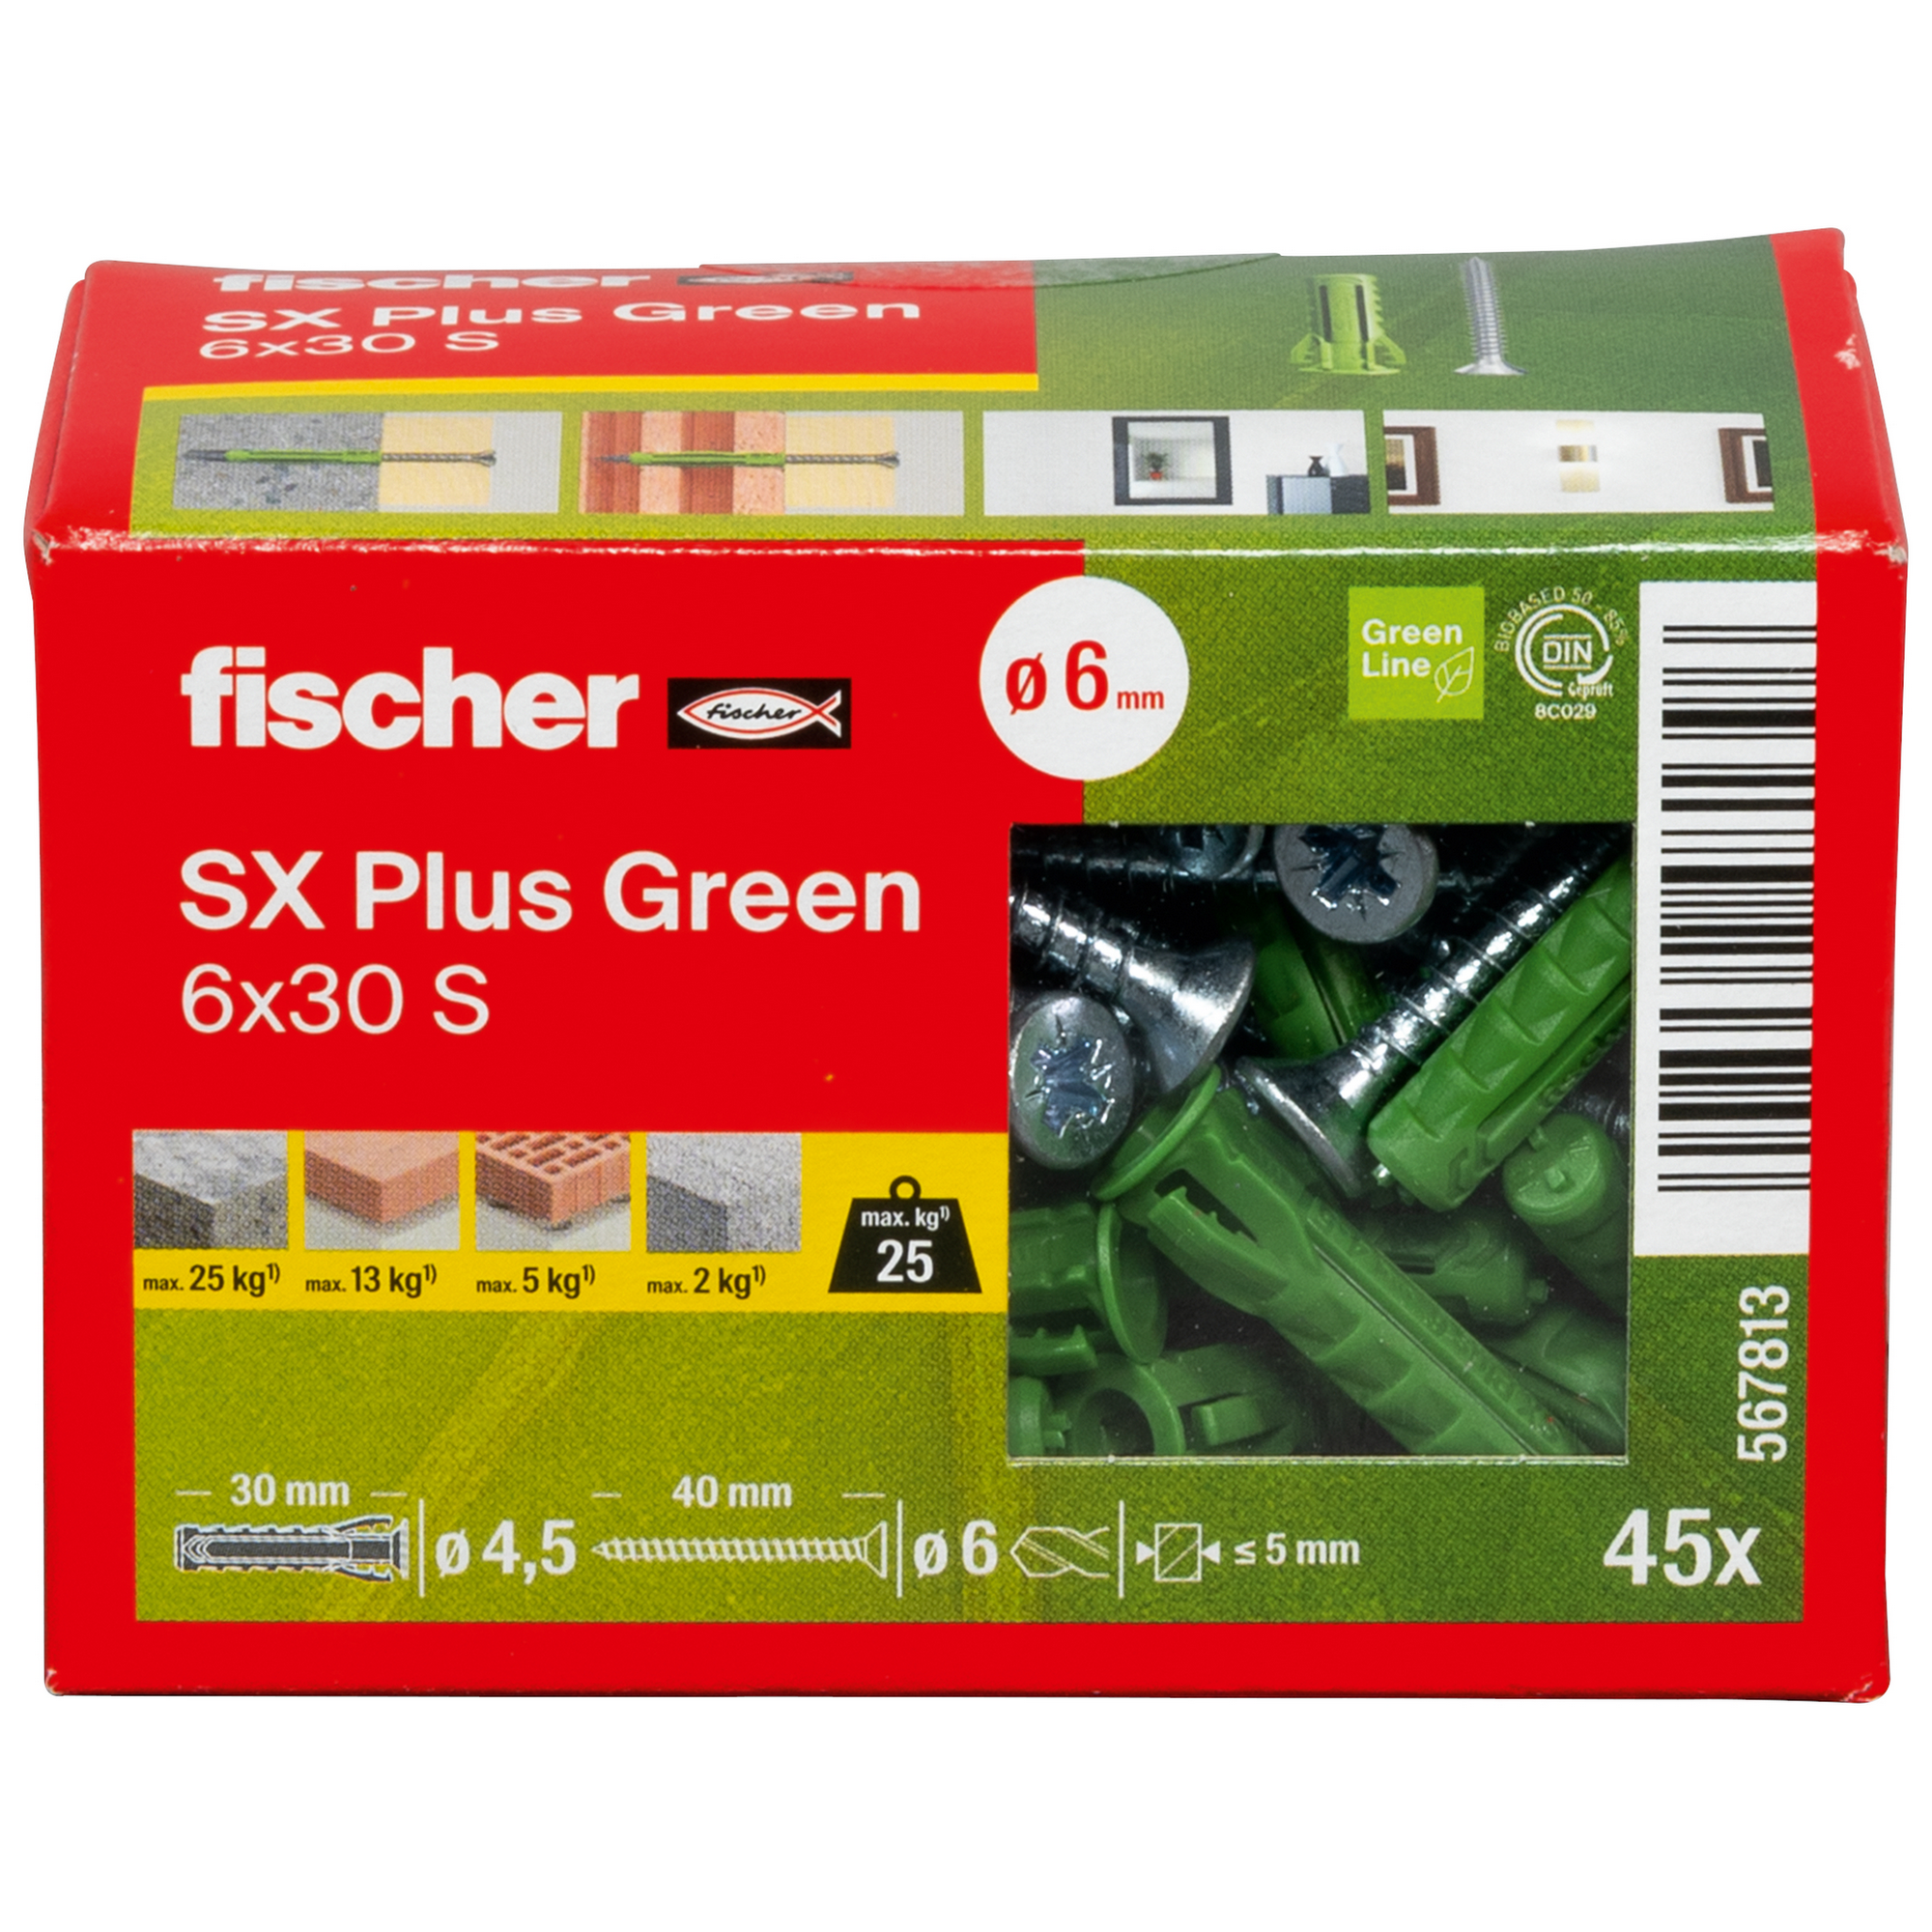 Spreizdübel-Set 'SX Plus Green' Ø 6 x 30 mm S mit Schraube, 90-teilig + product picture